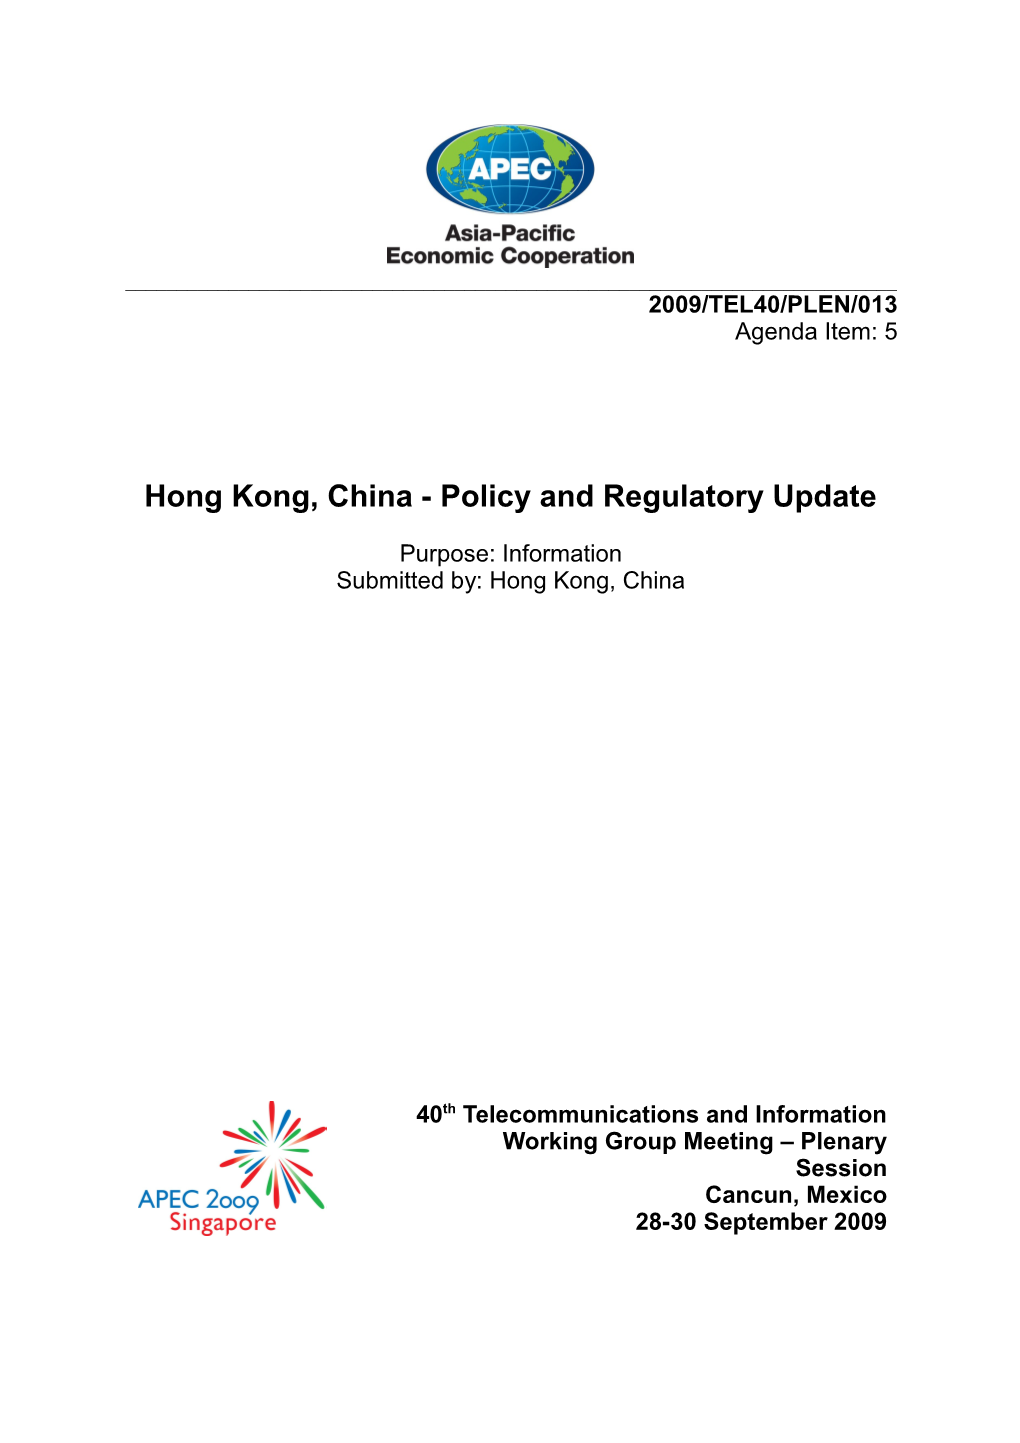 Hong Kong, China - Policy and Regulatory Update